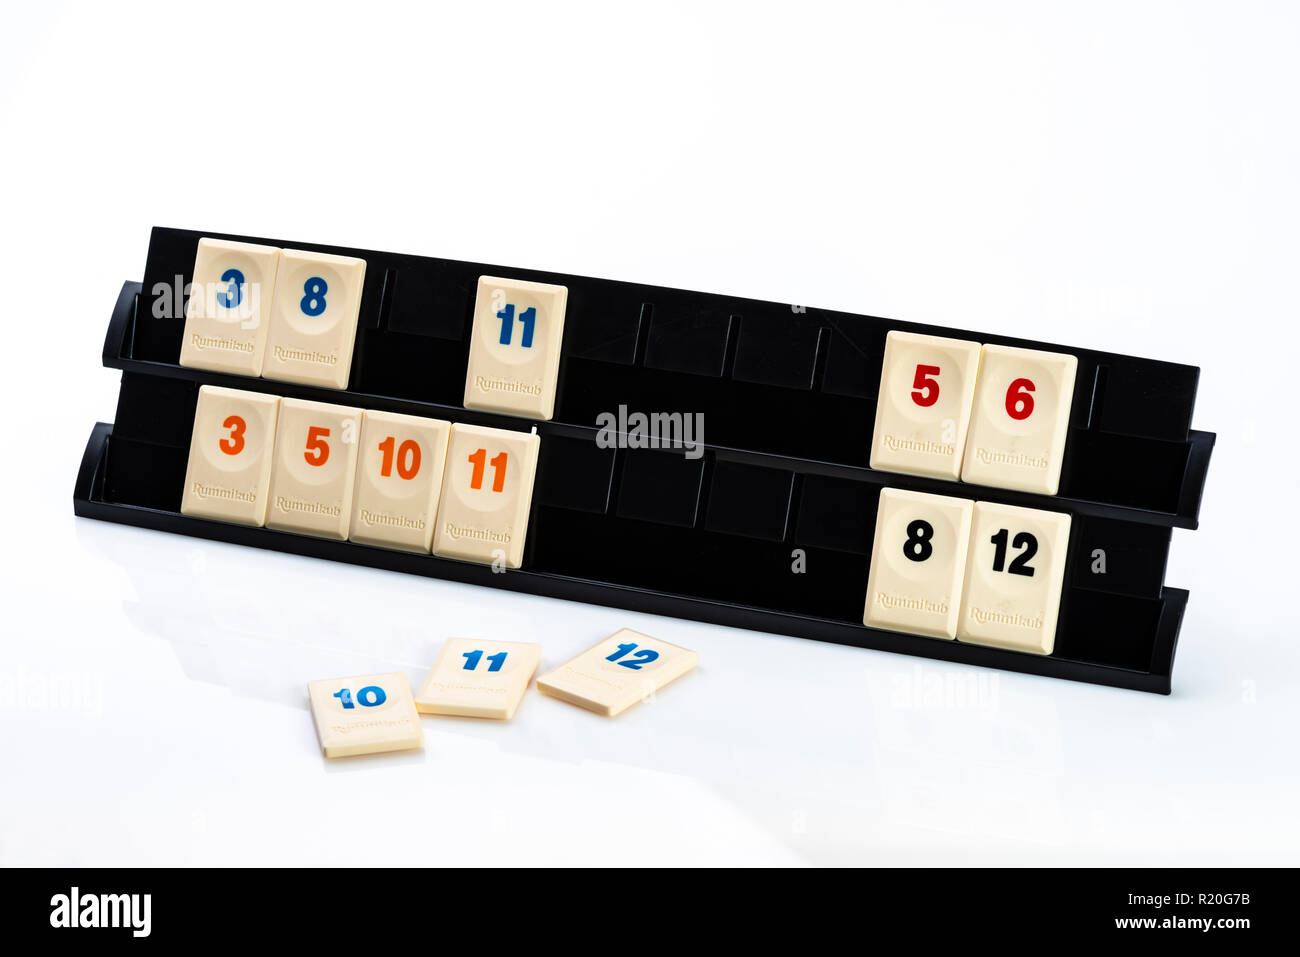 Rummikub piastrelle nel rack, il concetto di gioco. Famiglia educational gioco di bordo. Foto Stock